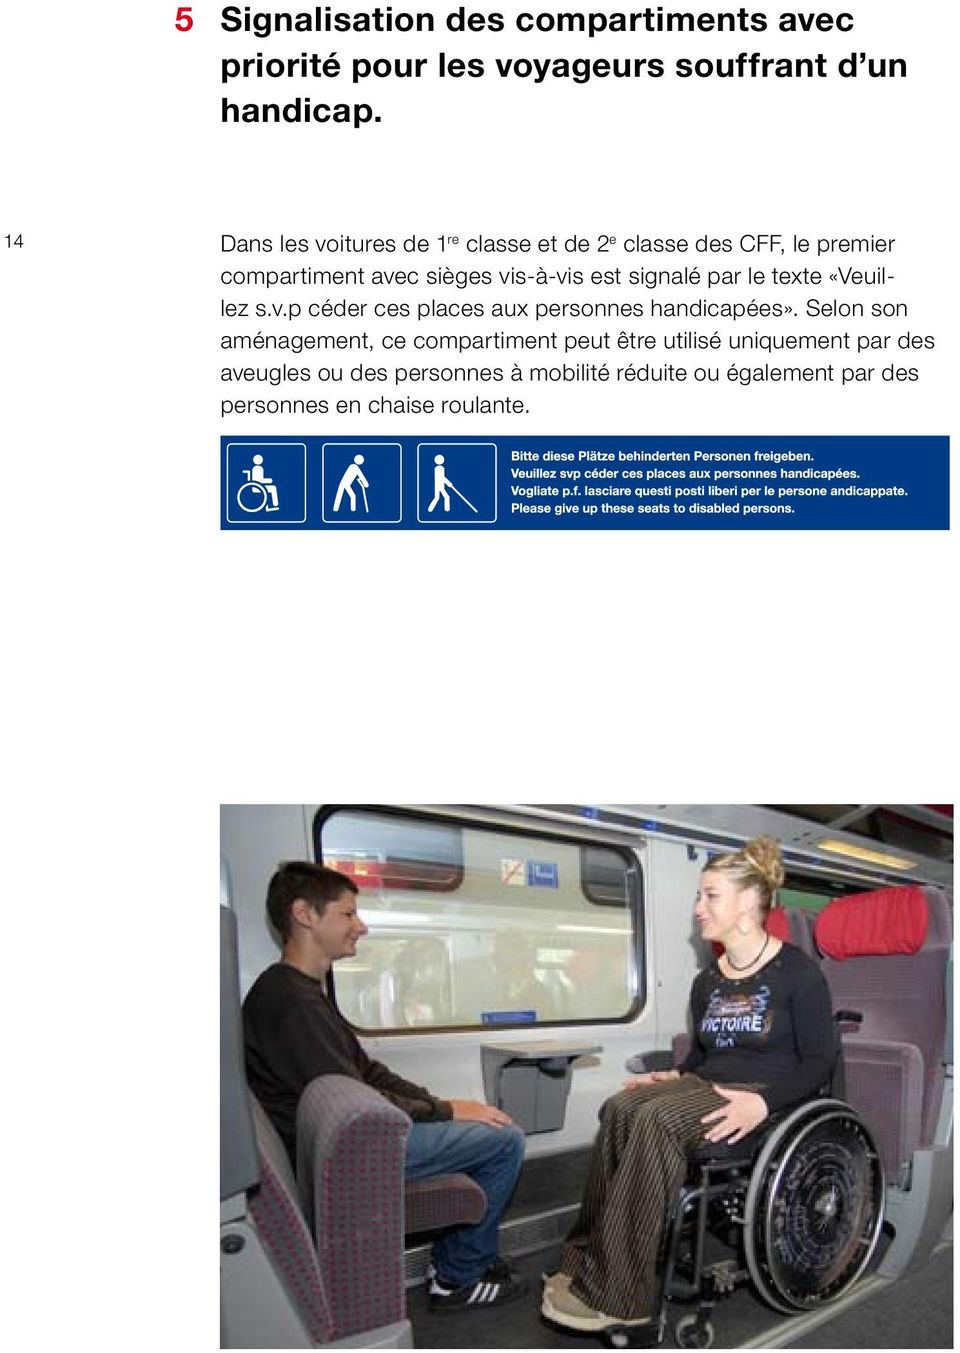 signalé par le texte «Veuillez s.v.p céder ces places aux personnes handicapées».